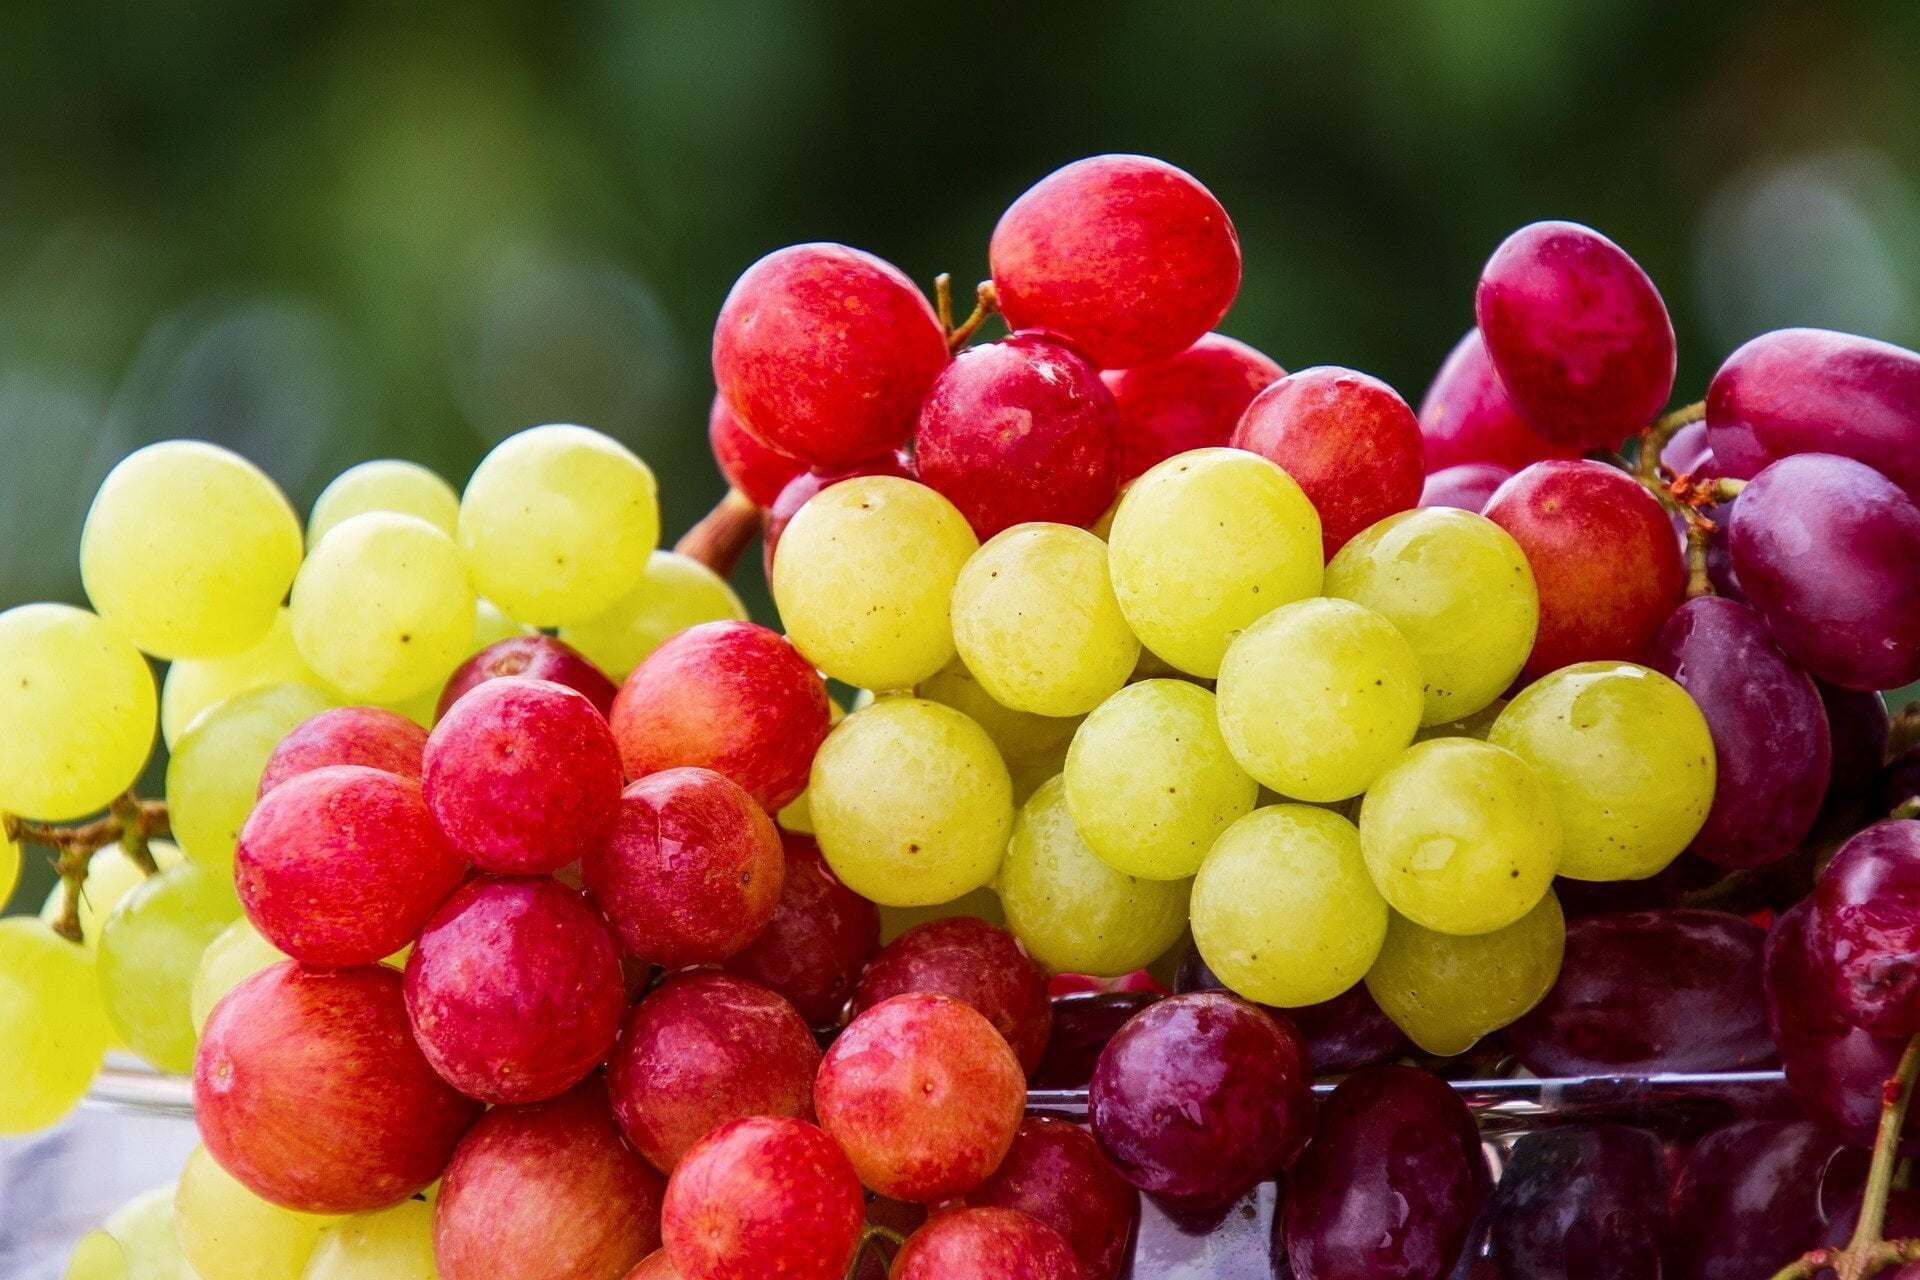 grapes تأثيرات "مذهلة" لاستهلاك العنب على الصحة وعلى العمر مجلة نقطة العلمية